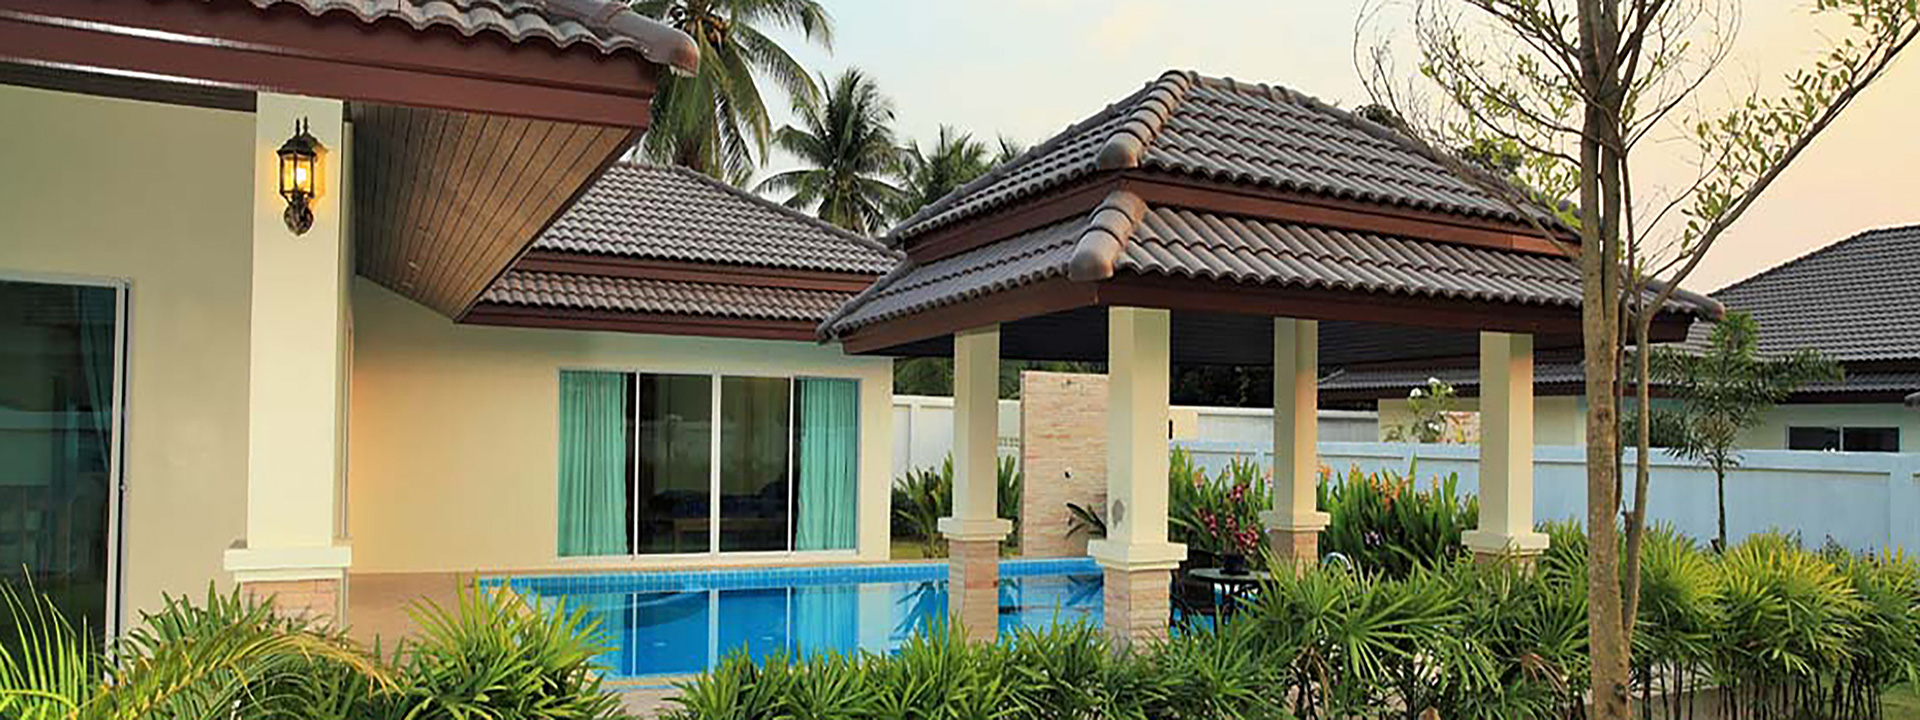 Pool Villa in Huai Yai - Na Jomtien - Pattaya, Thailand.